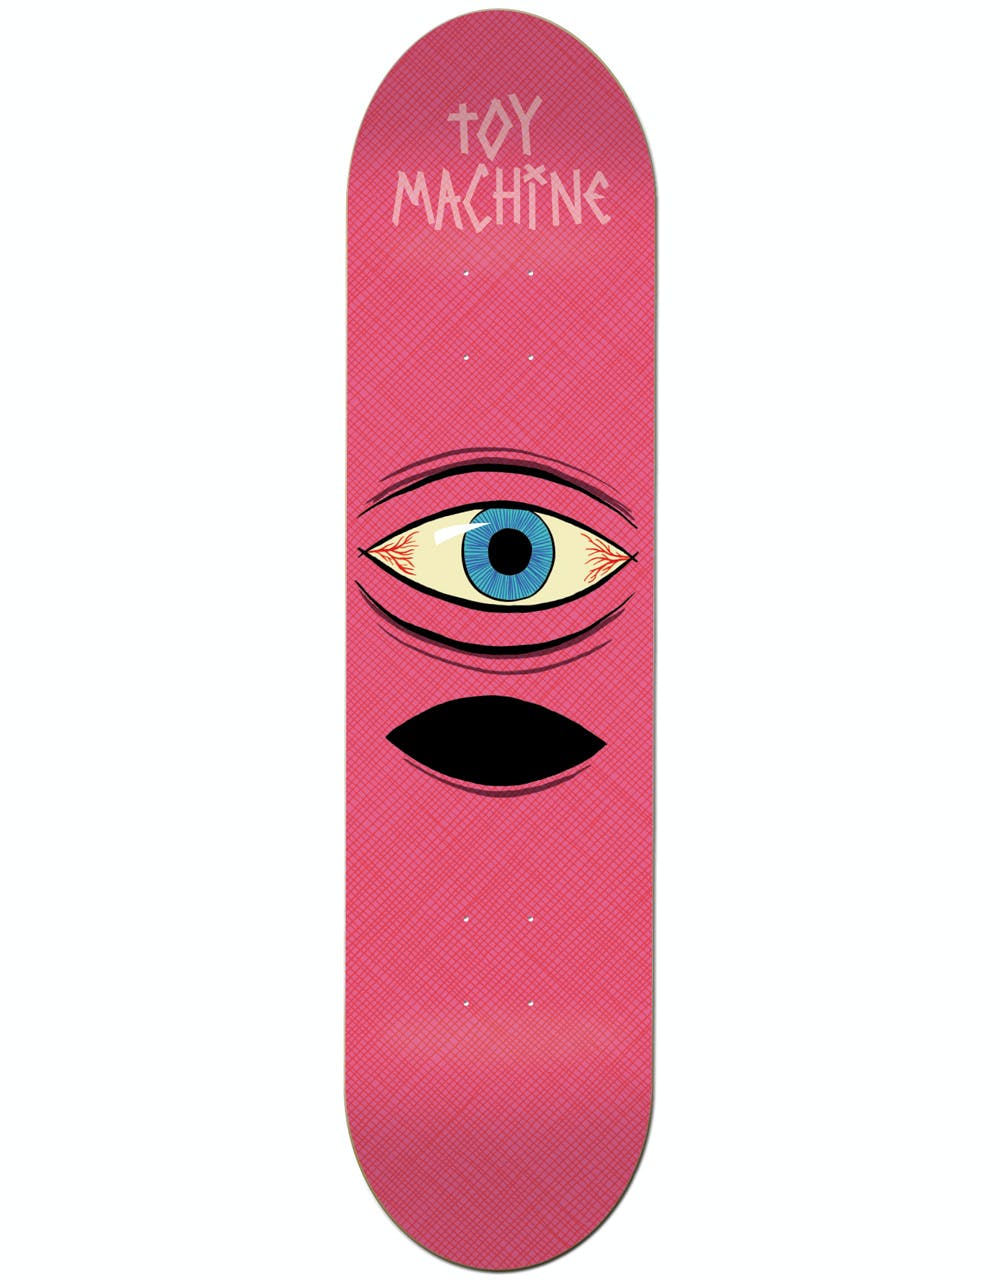 Toy Machine Surprise Skateboard Deck - 8"